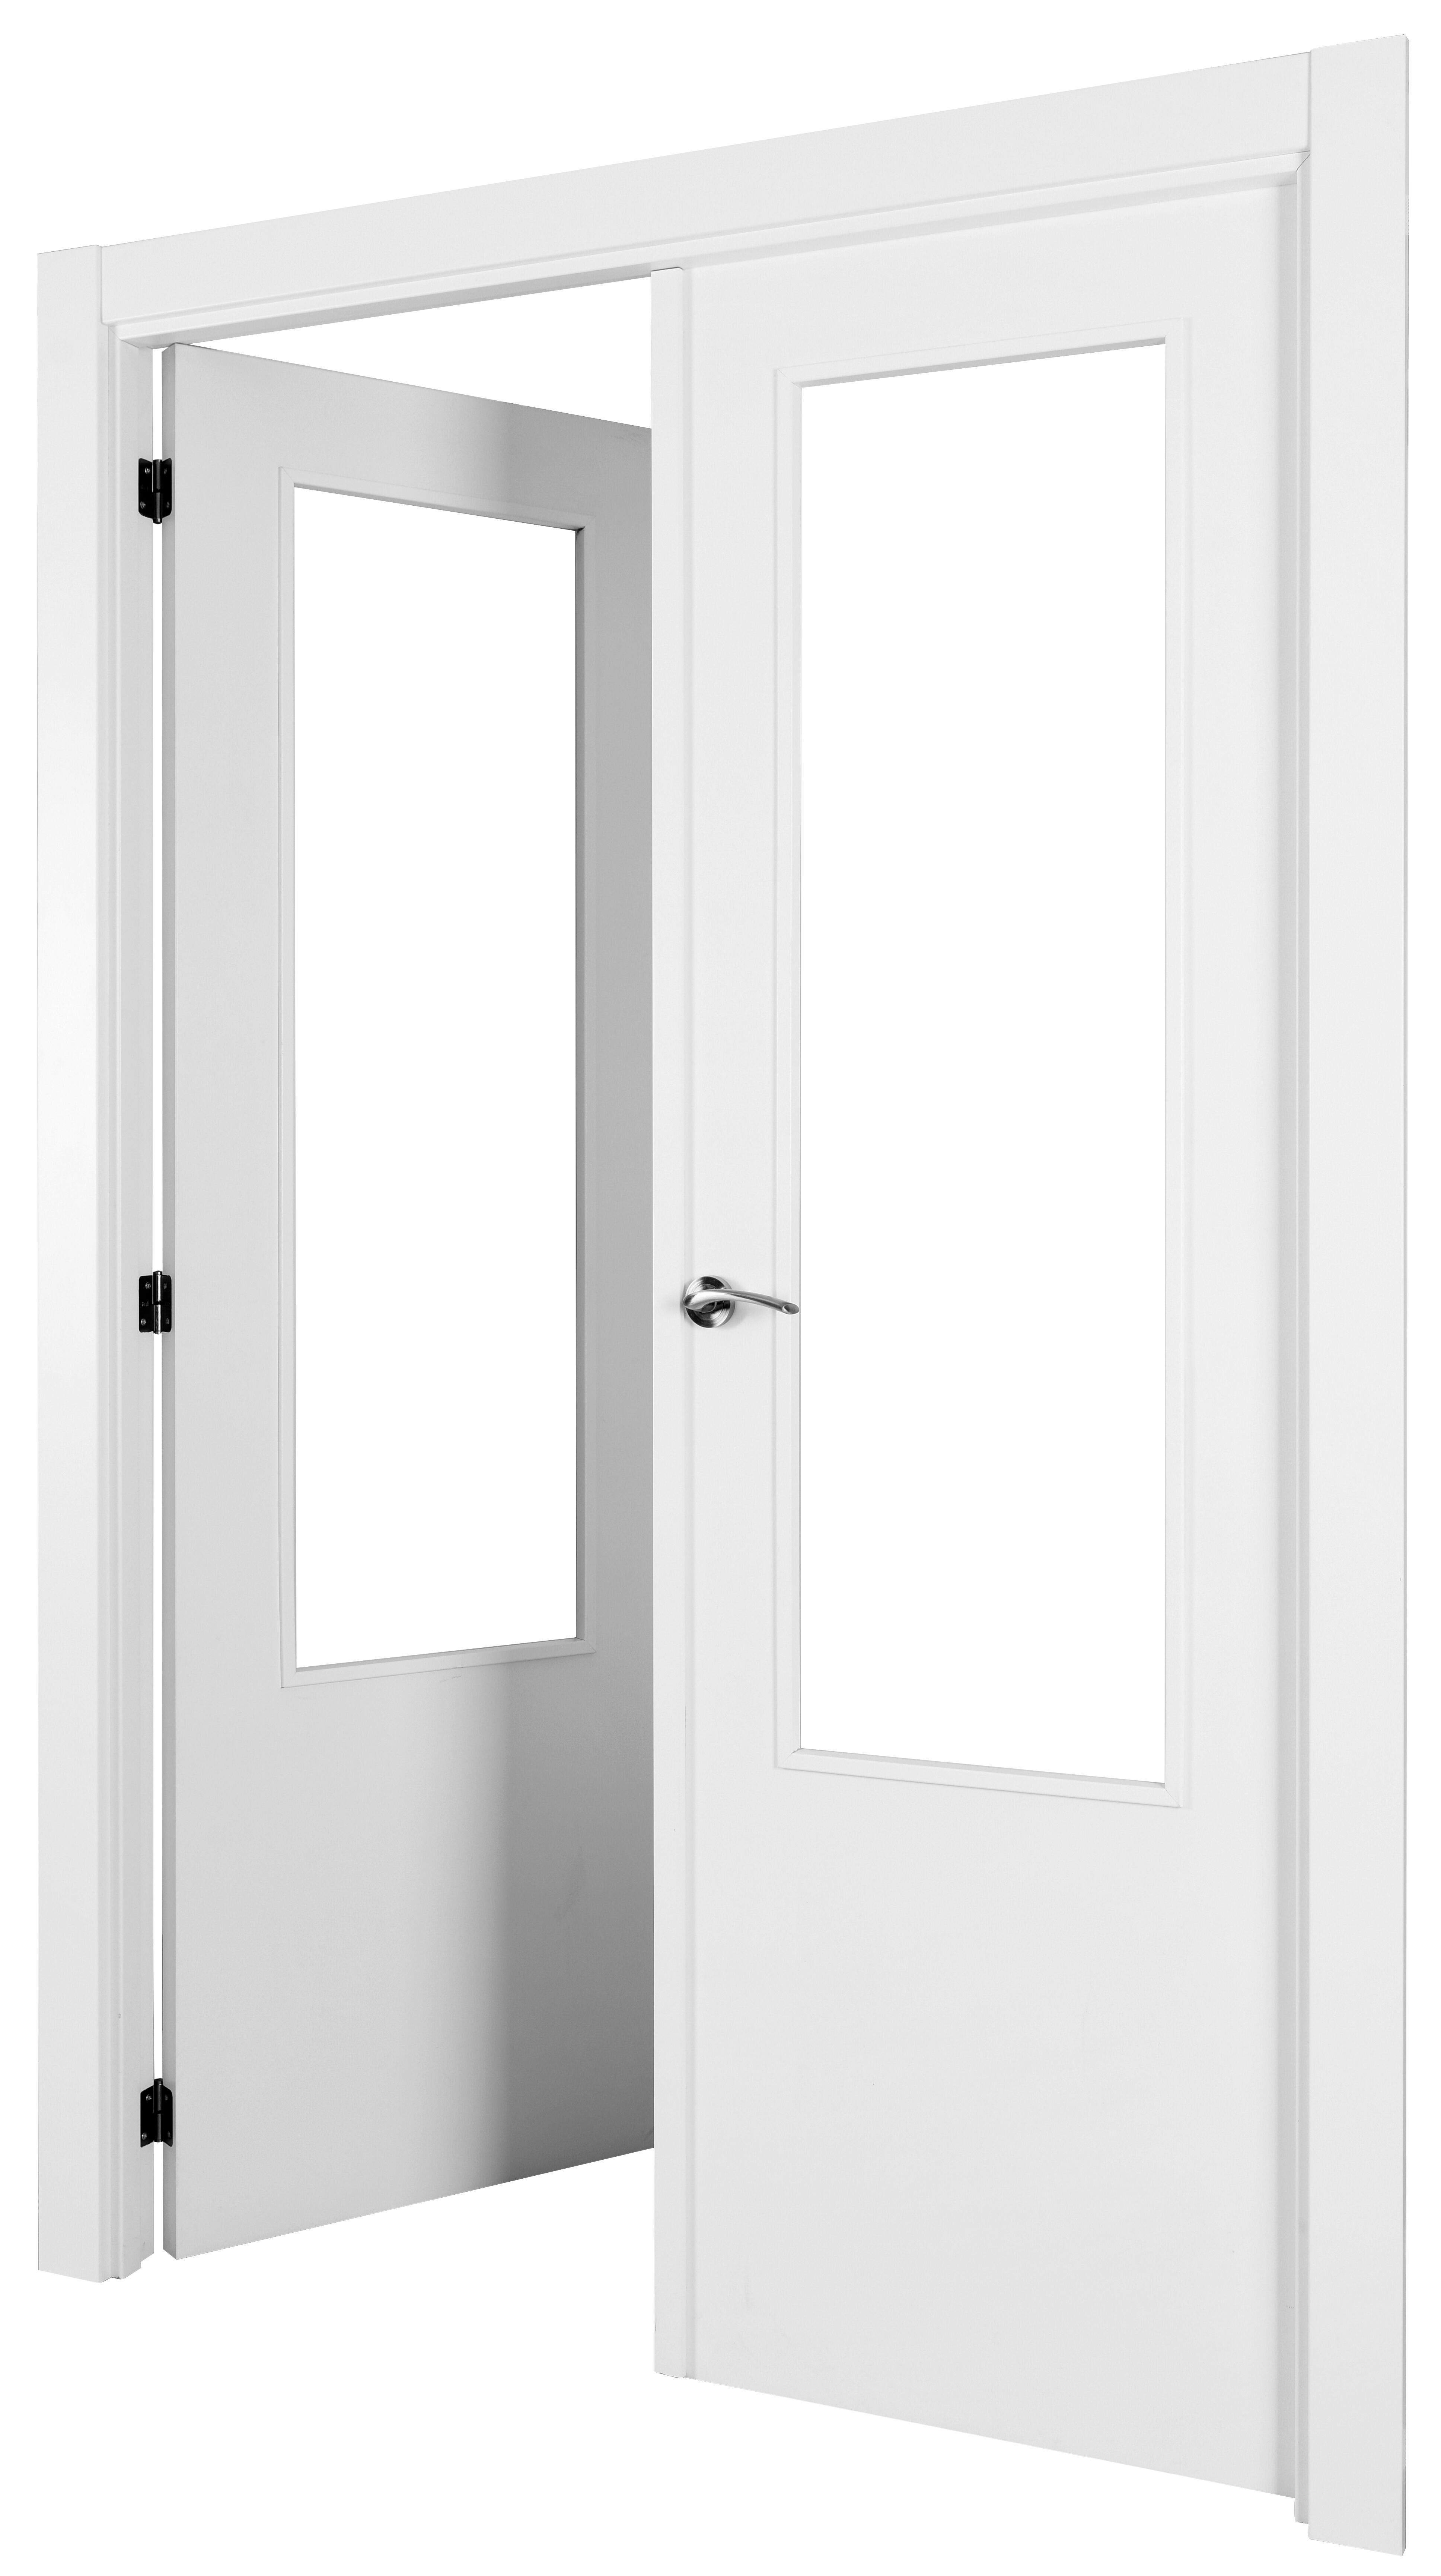 Puerta abatible lyon blanca aero blanco izquierda con cristal de 90x30 y 145cm